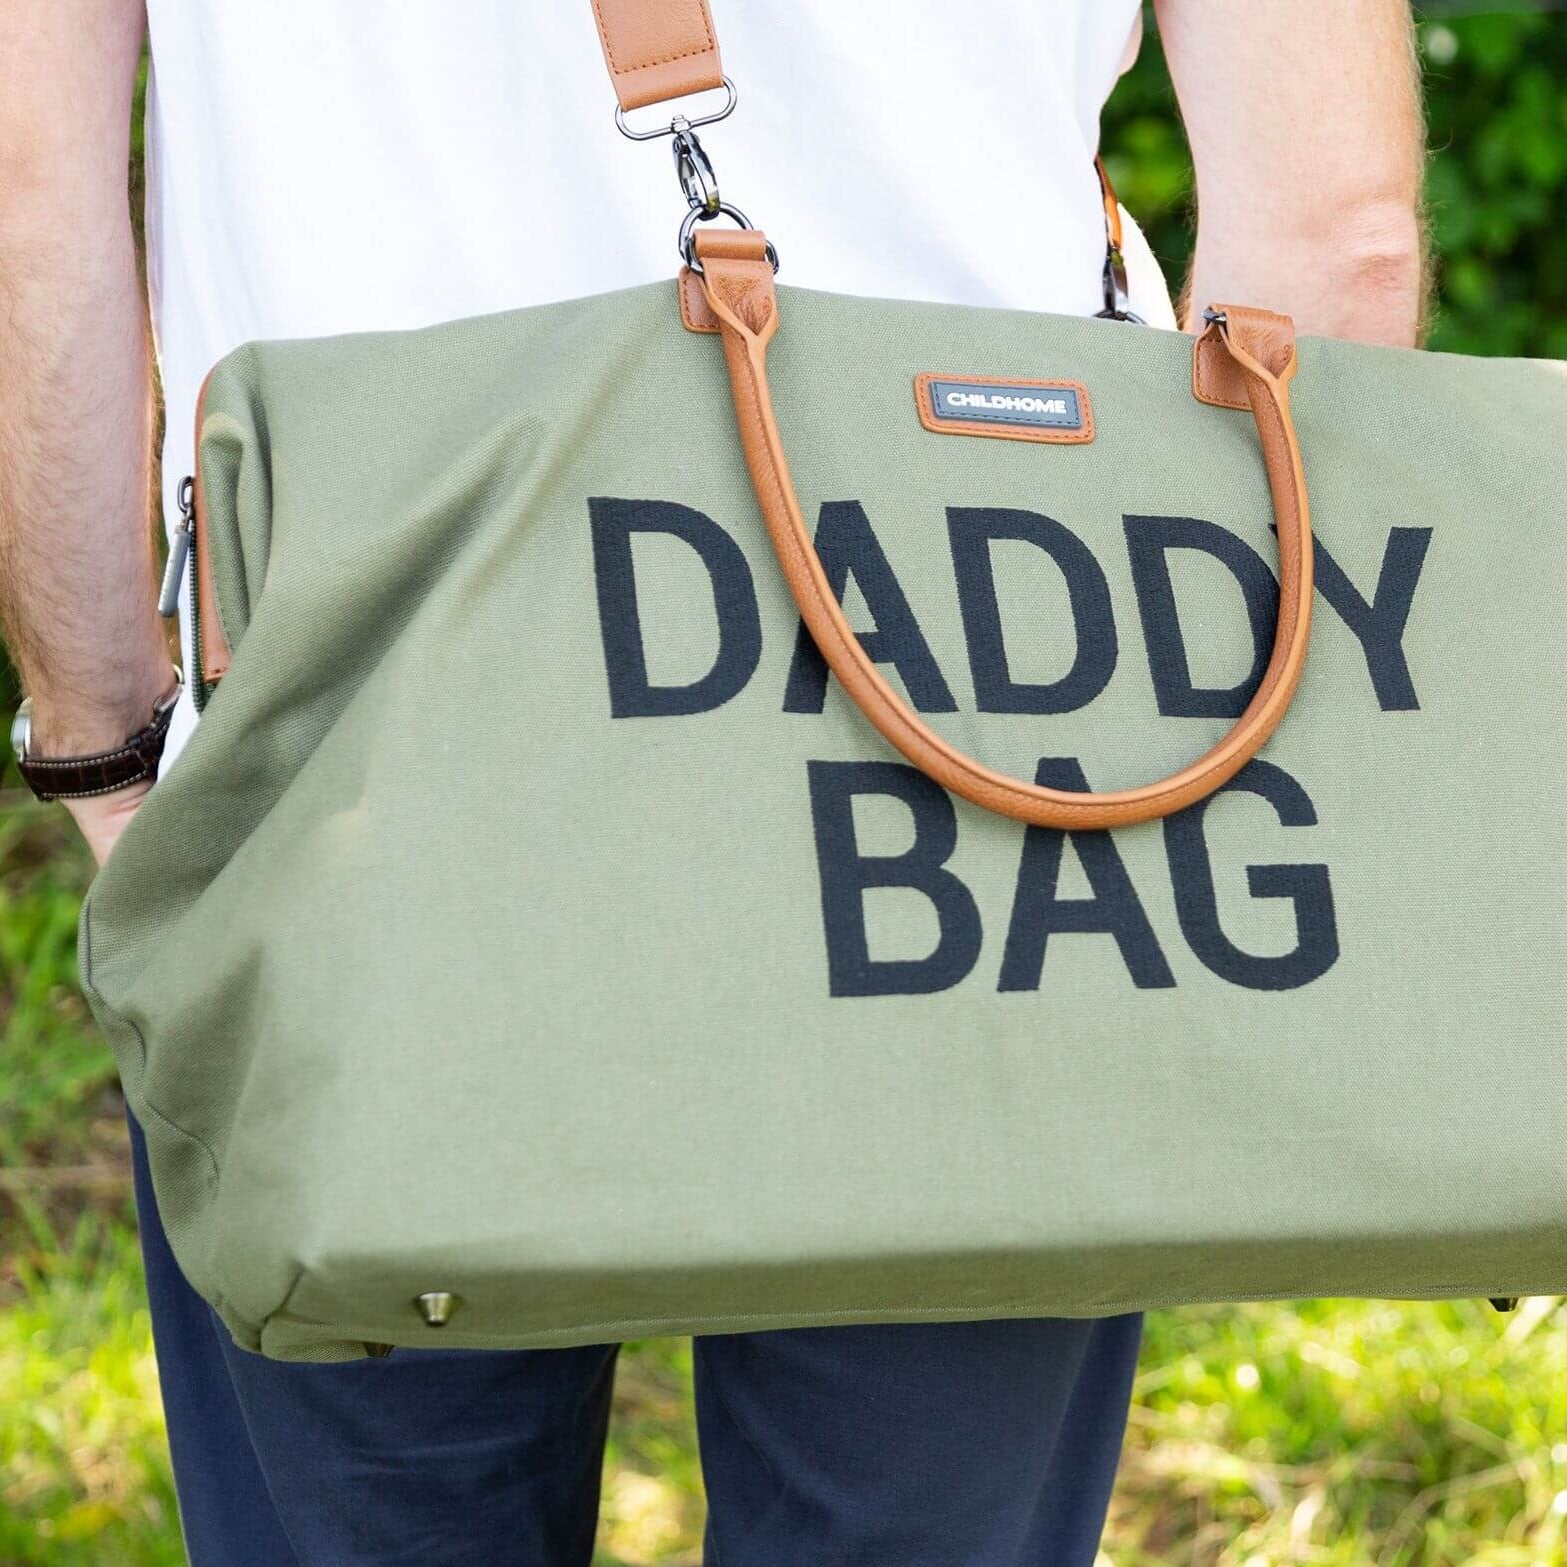 Childhome Daddy Bag & Wickeltasche - Canvas - khaki